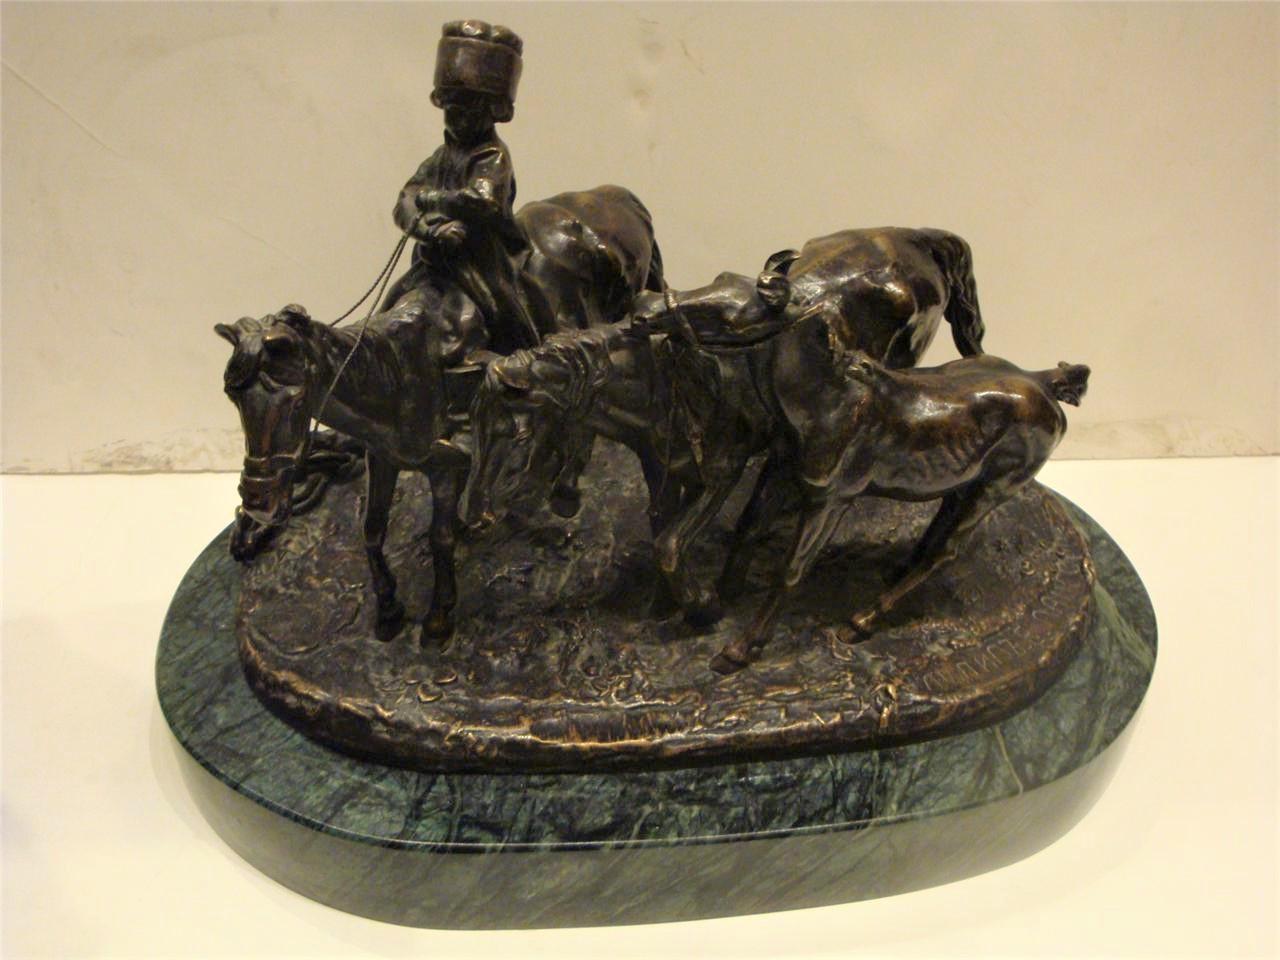 Eine schöne und seltene Original 19. Jahrhundert russische Bronze-Skulptur von Evgeni Lanceray, Bronze gegossen figuralen Gruppe. Bronze Zeigt einen Jungen auf einem Pferd, mit zwei weiteren Pferden, signiert, mit anderen Markierungen. Wunderschön